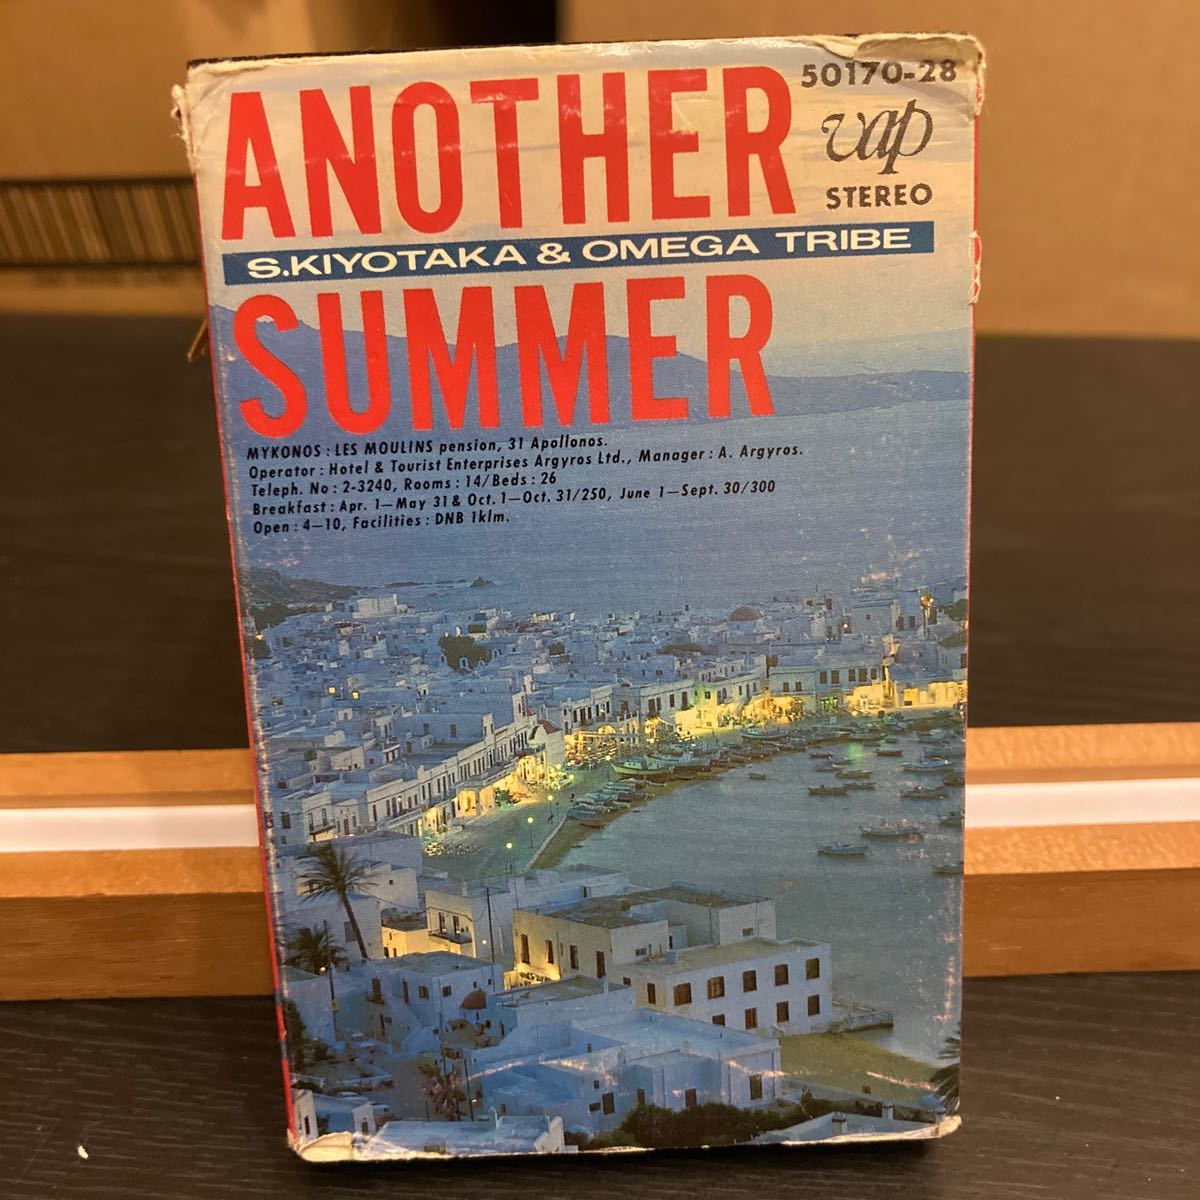 S. Kiyotaka & Omega Tribe 【Another Summer】カセットテープ cassette tape Vap 50170-28 1985 杉山 清貴 オメガトライブの画像1